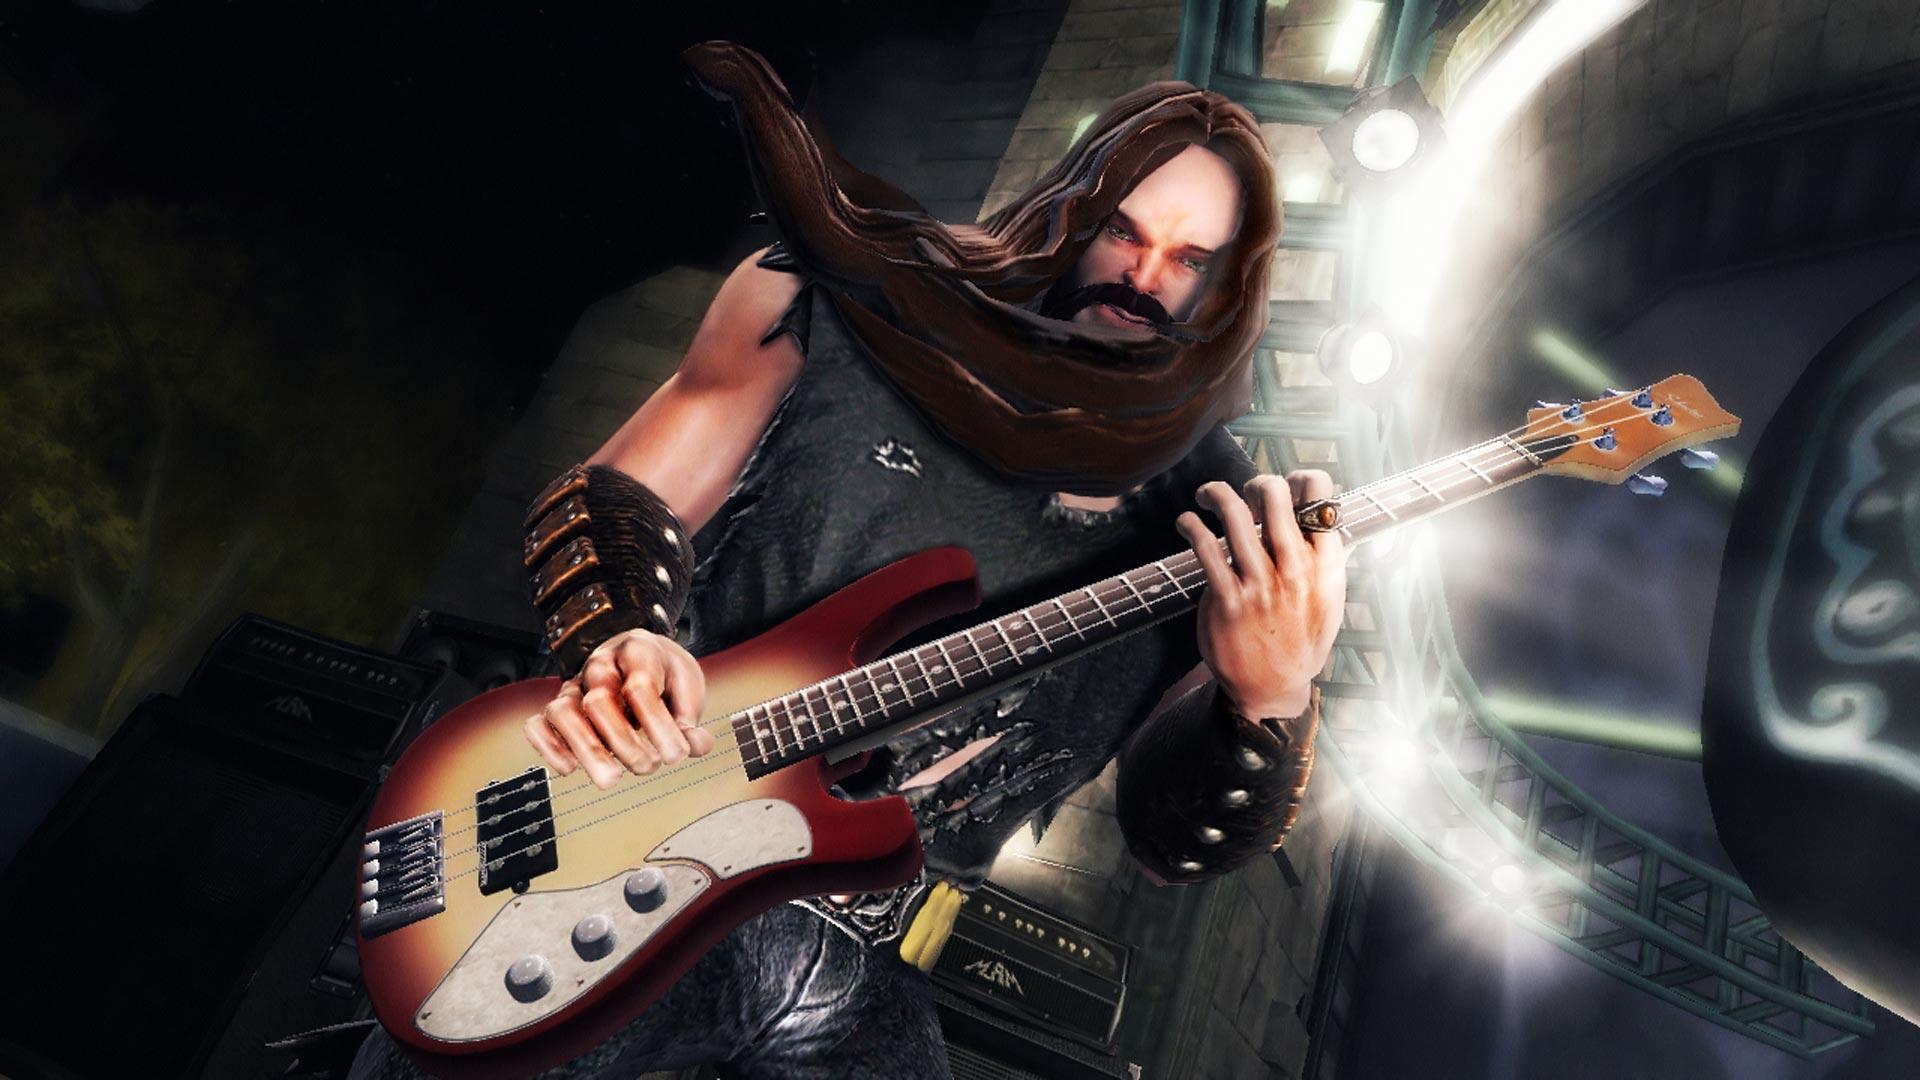 Desktop Wallpaper · Gallery · Games · Guitar Hero 5. Free